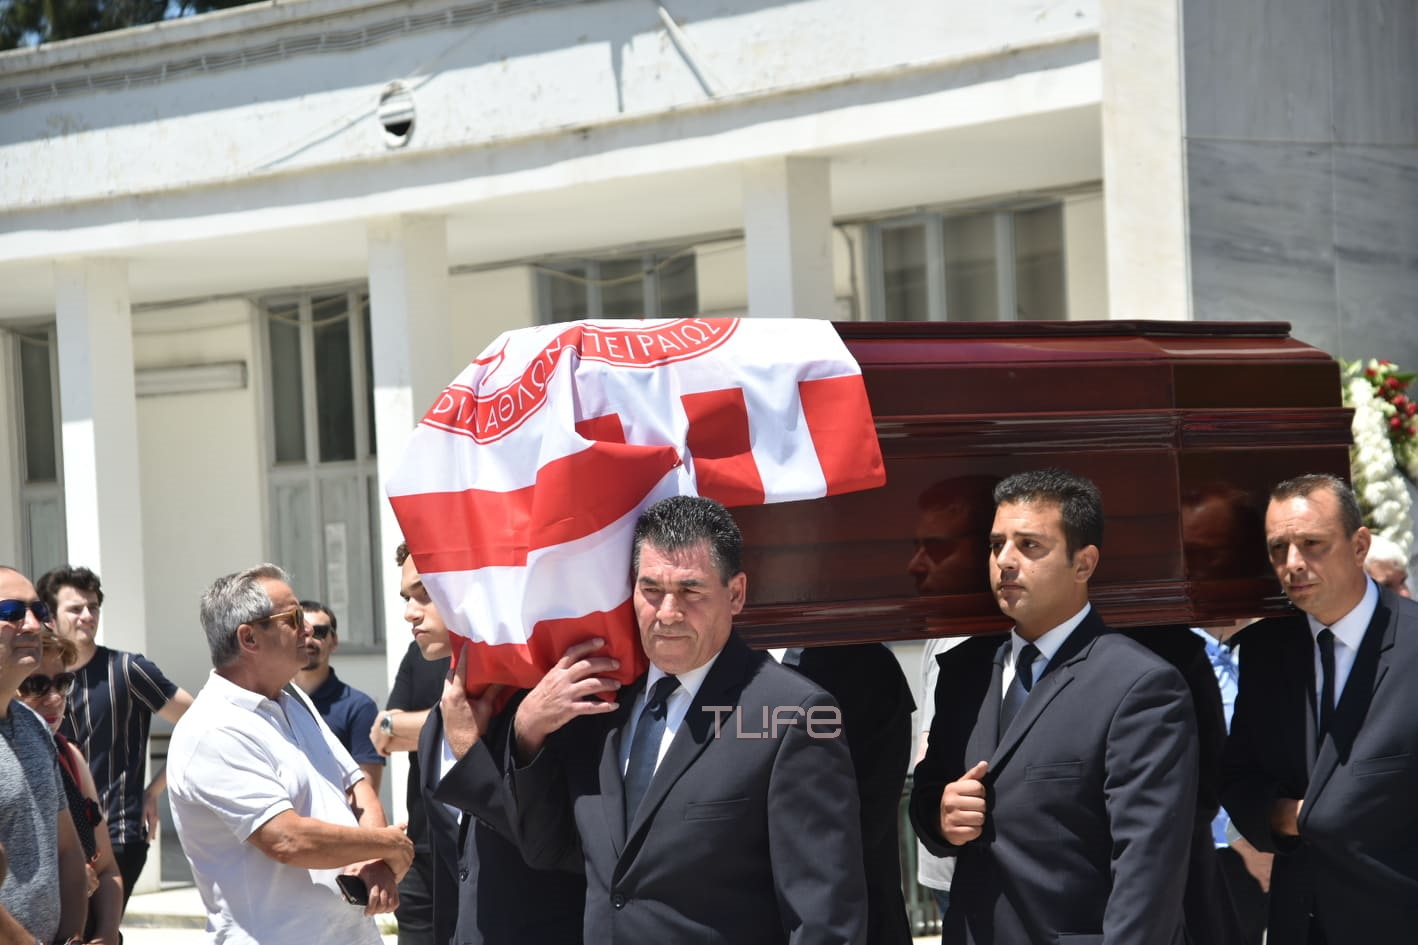 Νίκος Αλέφαντος: Το τελευταίο χειροκρότημα! Συγκίνηση στην κηδεία του στο Α’ Νεκροταφείο